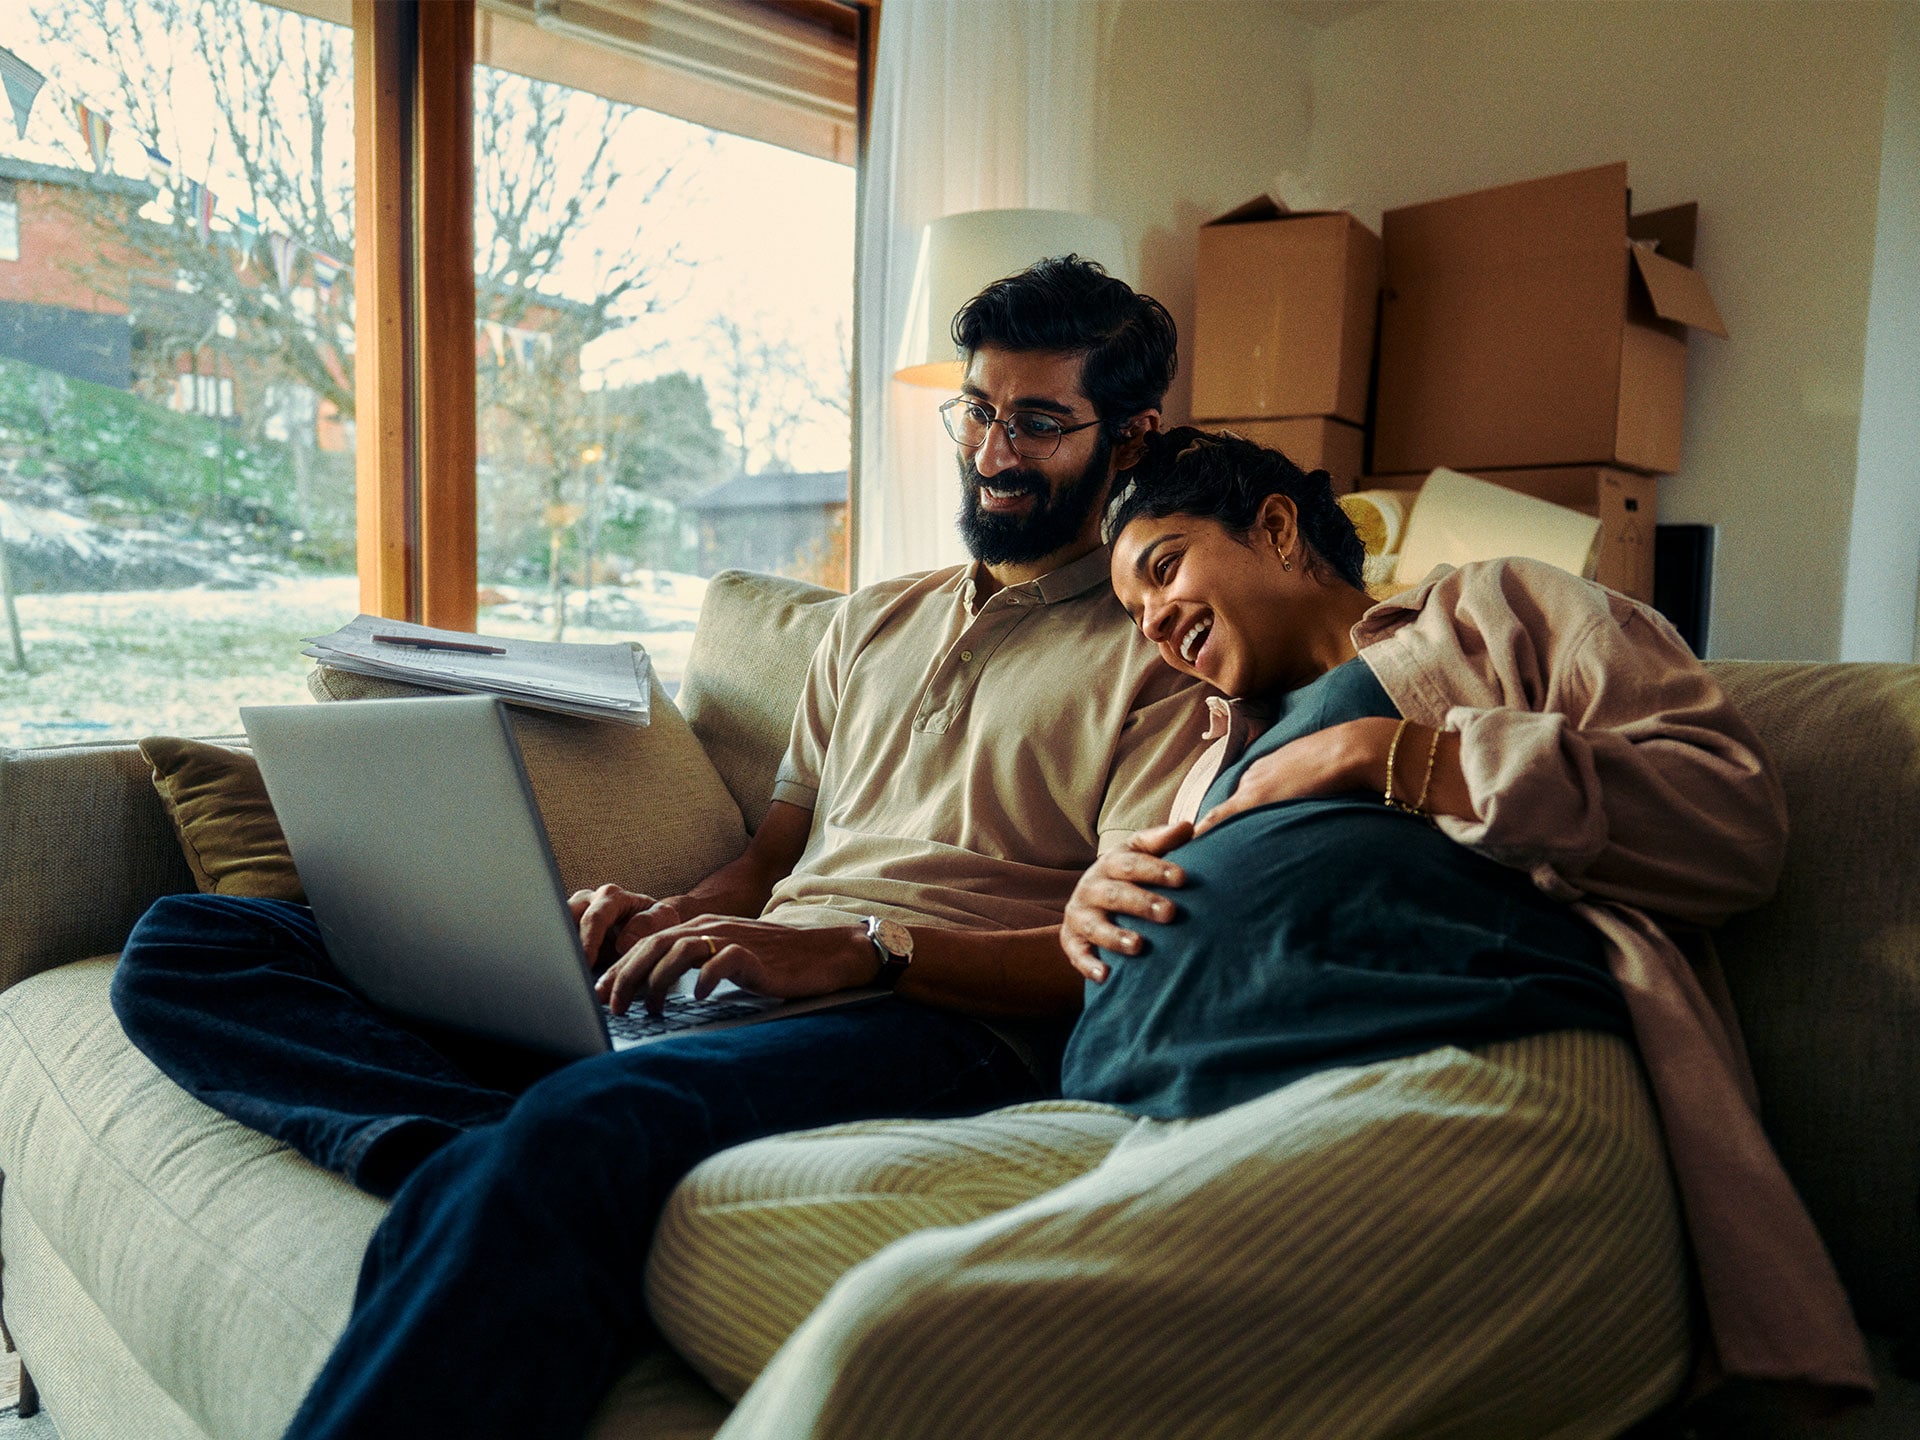 Una giovane coppia seduta davanti a un computer portatile calcola i possibili risparmi.